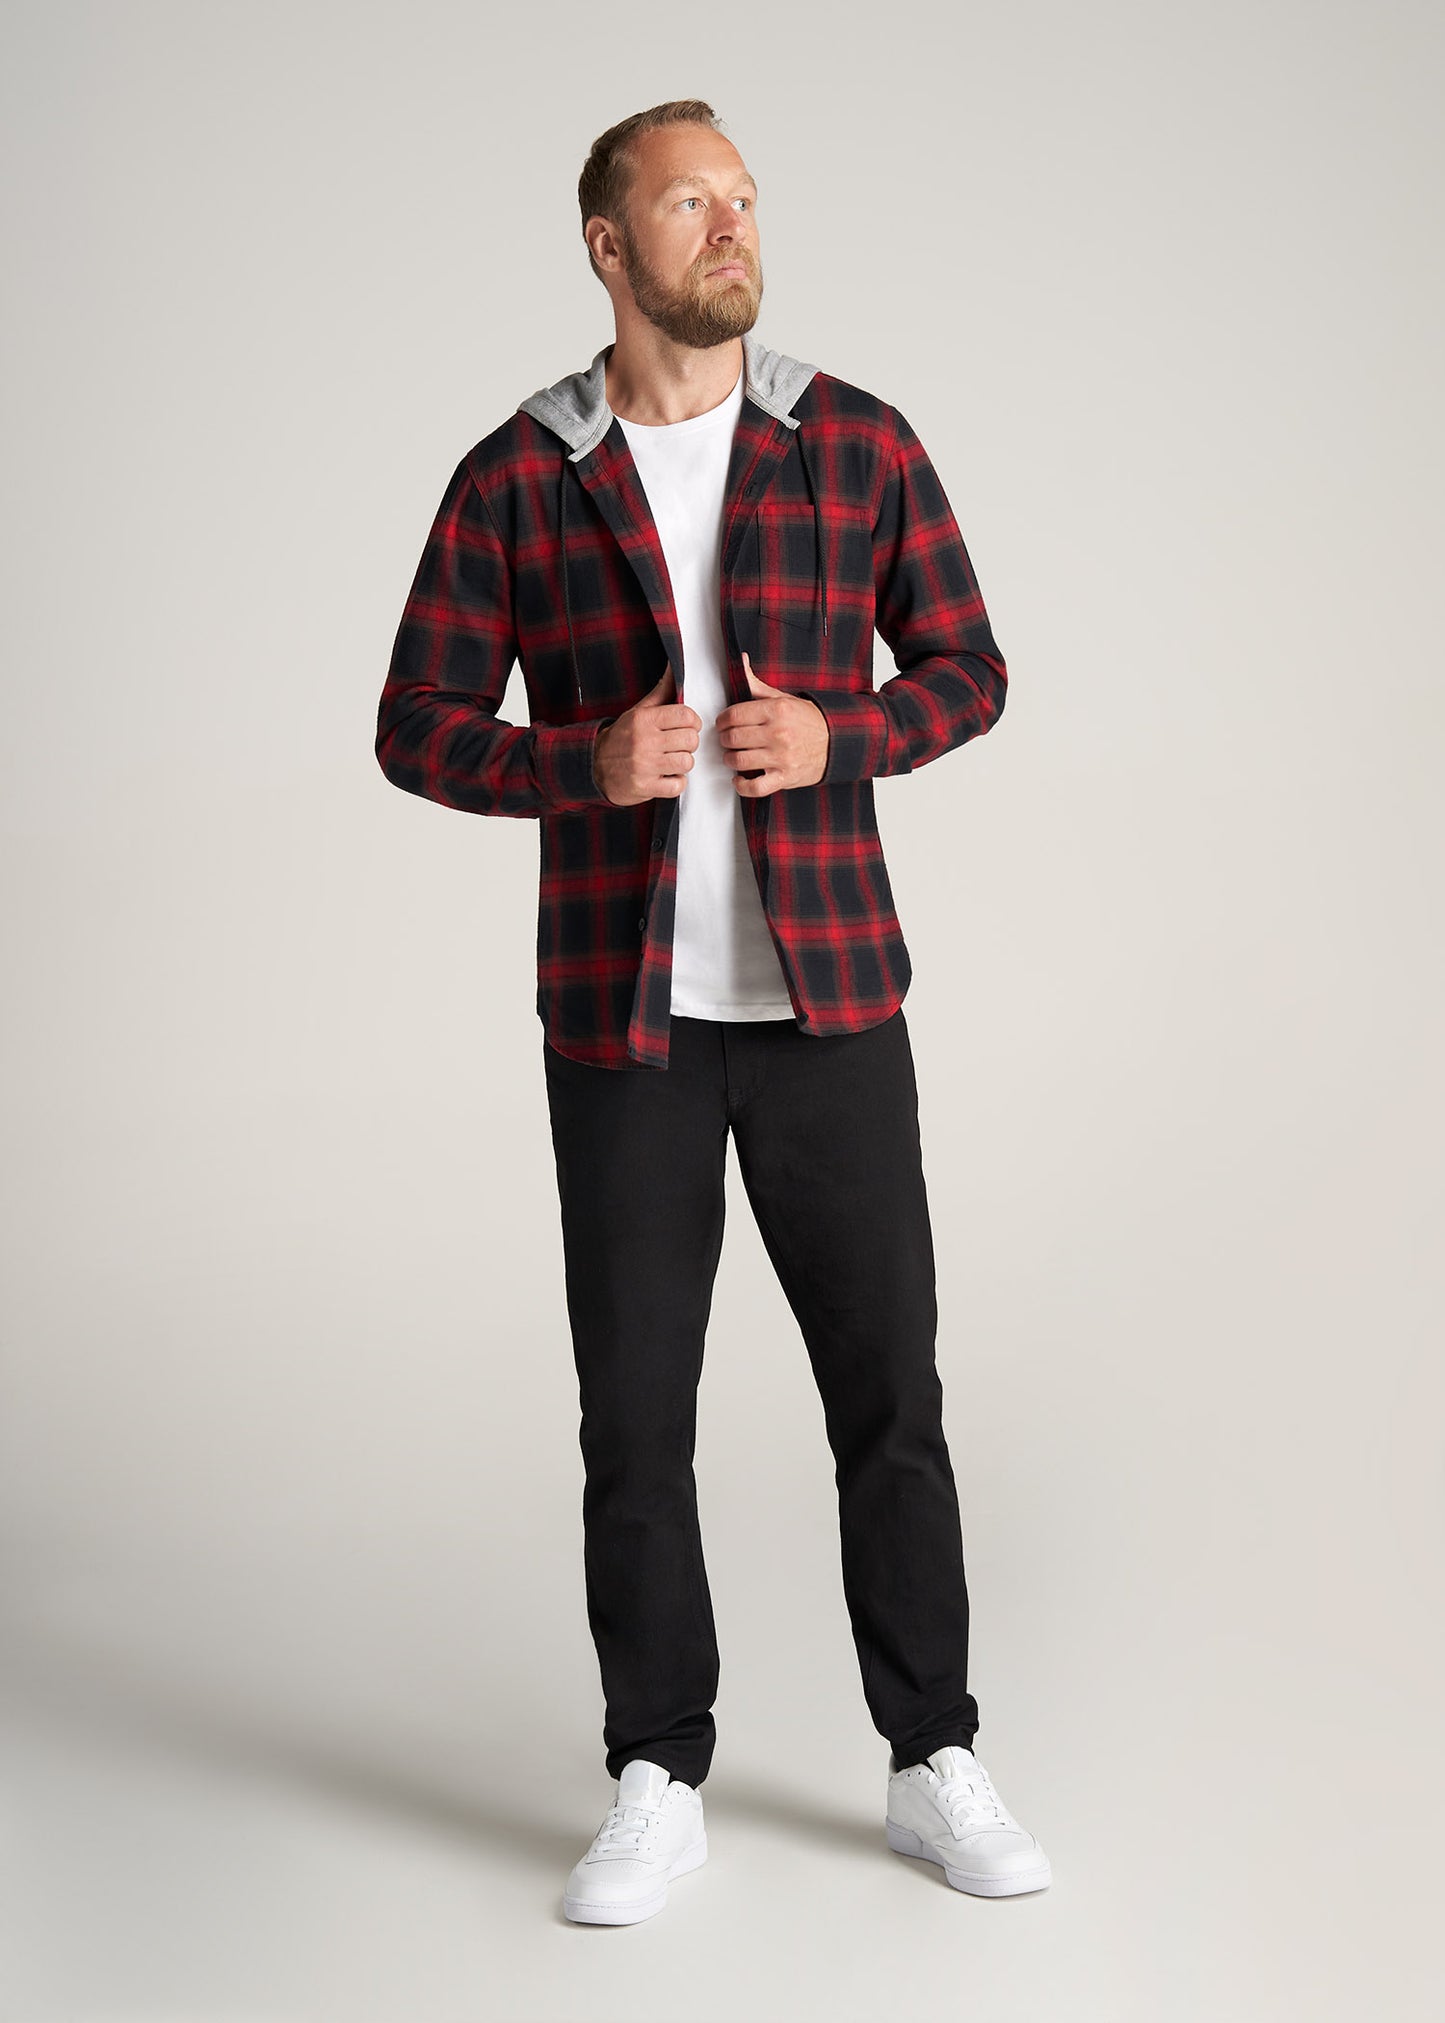     American-Tall-Men-LJ-Hooded-FlannelShirt-BlackRedPlaid-full